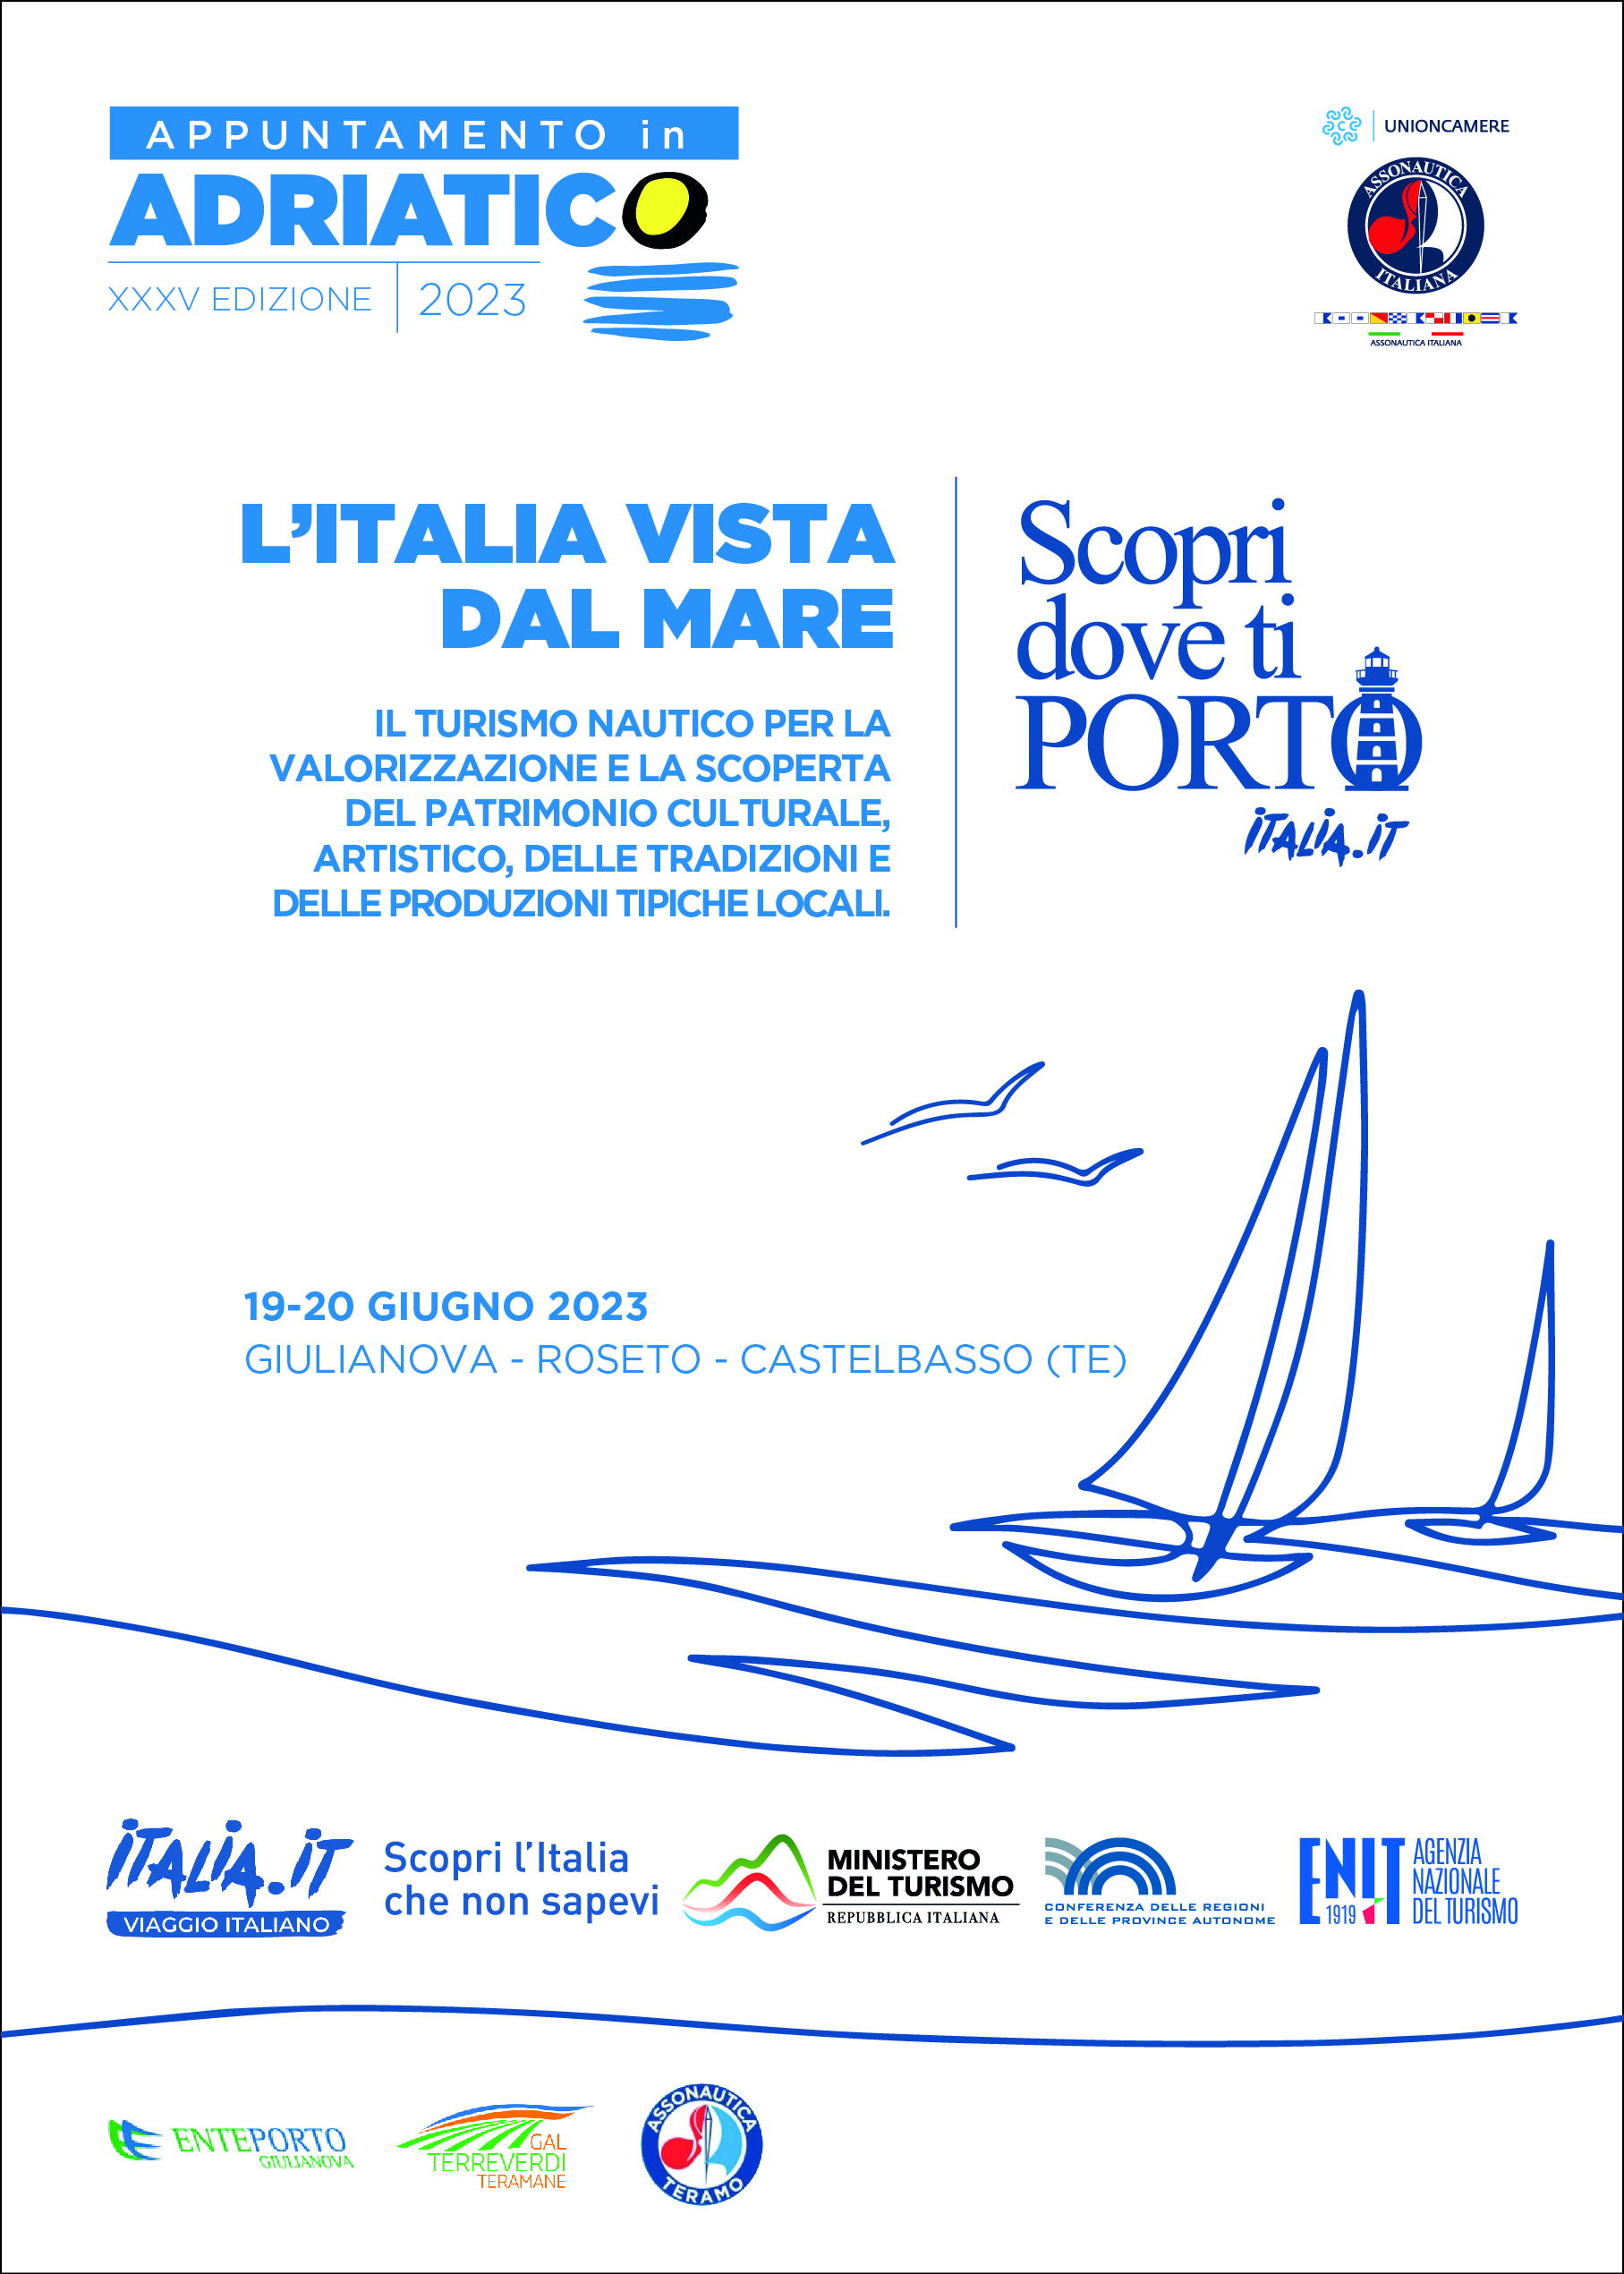 La flotta di “Appuntamento in Adriatico” arriva in Abruzzo: visite guidate a Roseto, Giulianova e Castelbasso